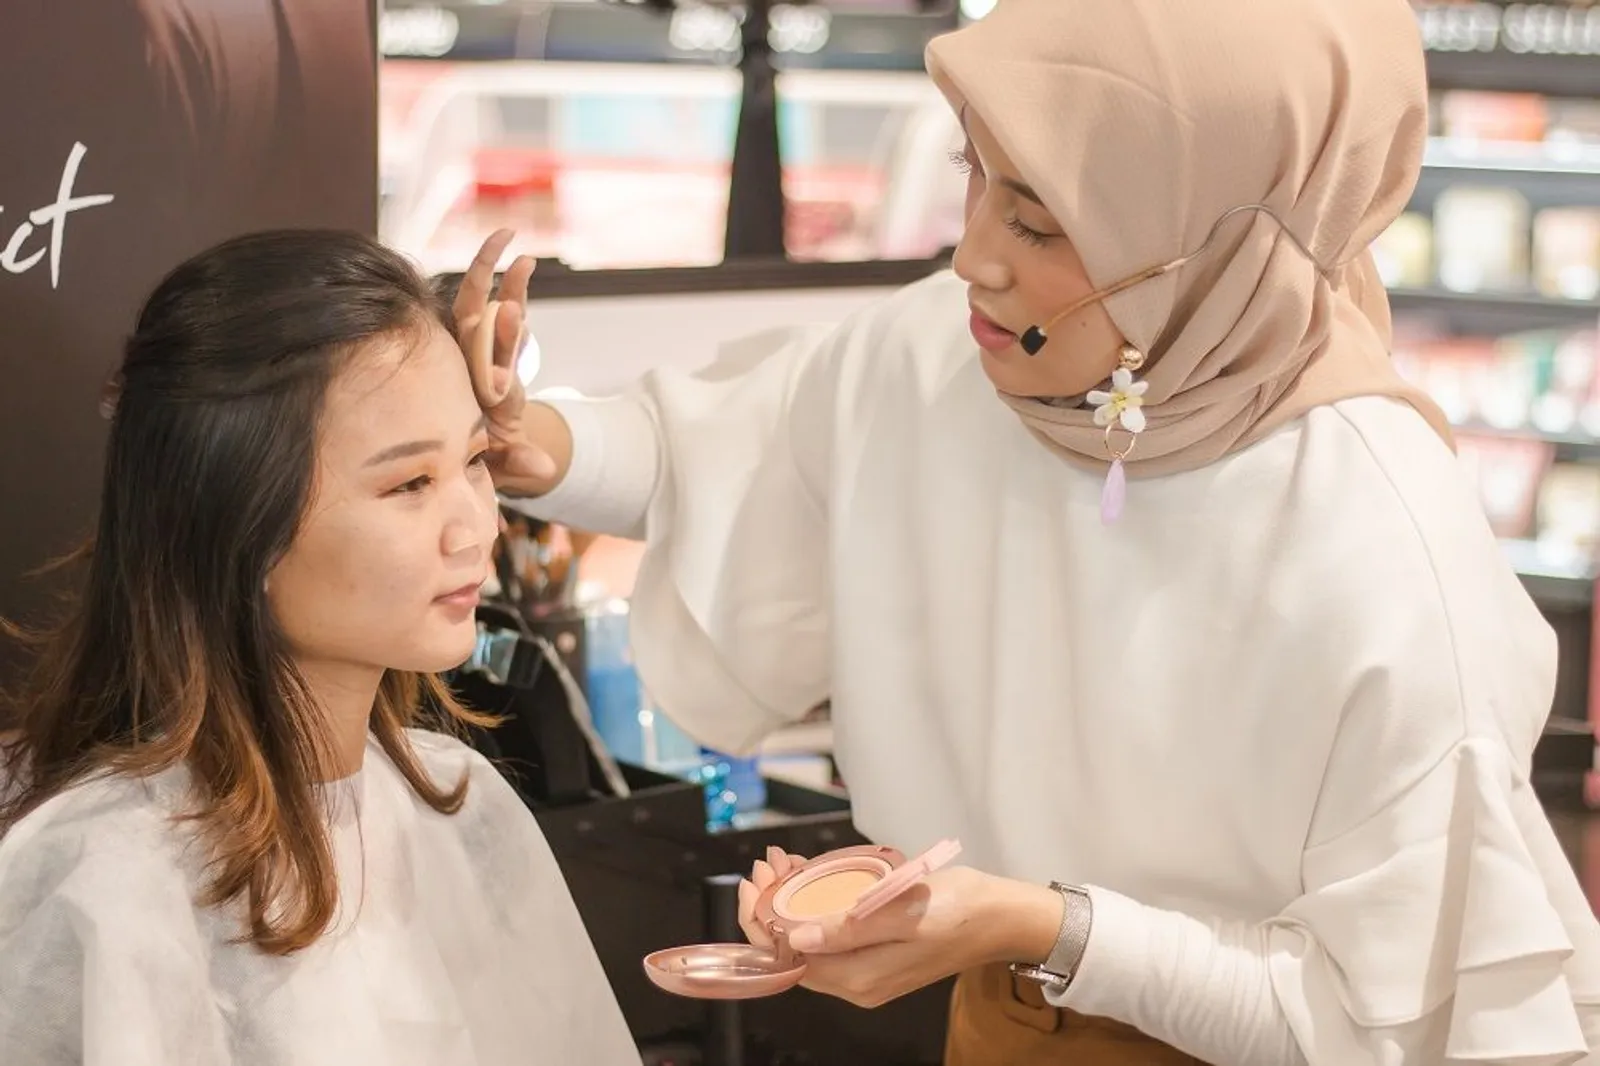 Intip 5 Keseruan Event Laneige di Sephora Bandung, Kamu Juga Datang?